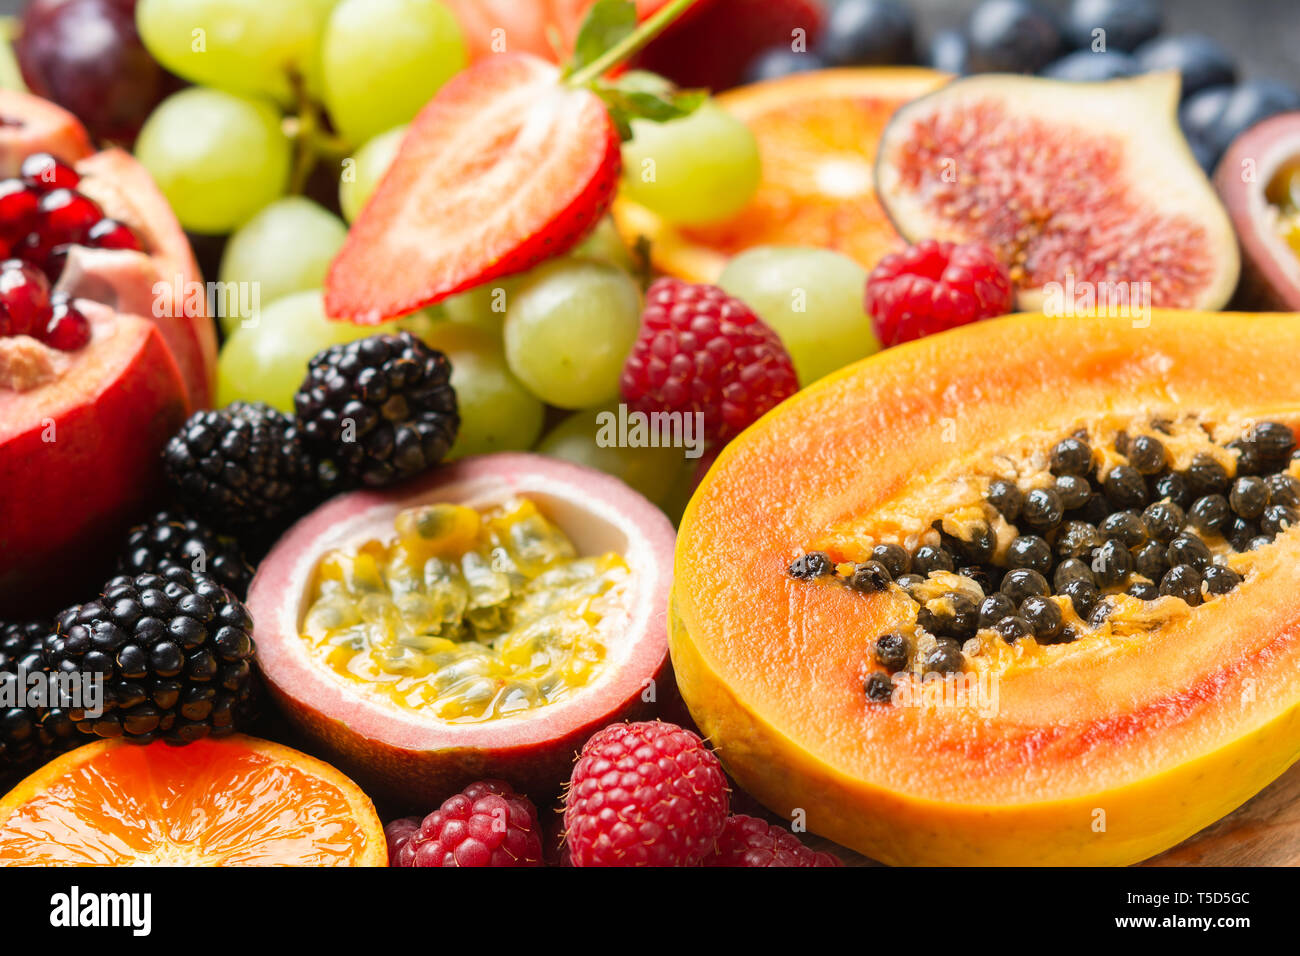 De délicieux fruits sains Papaye Mangue fond oranges fraises fruits de la passion fruits rouges, selective focus Banque D'Images